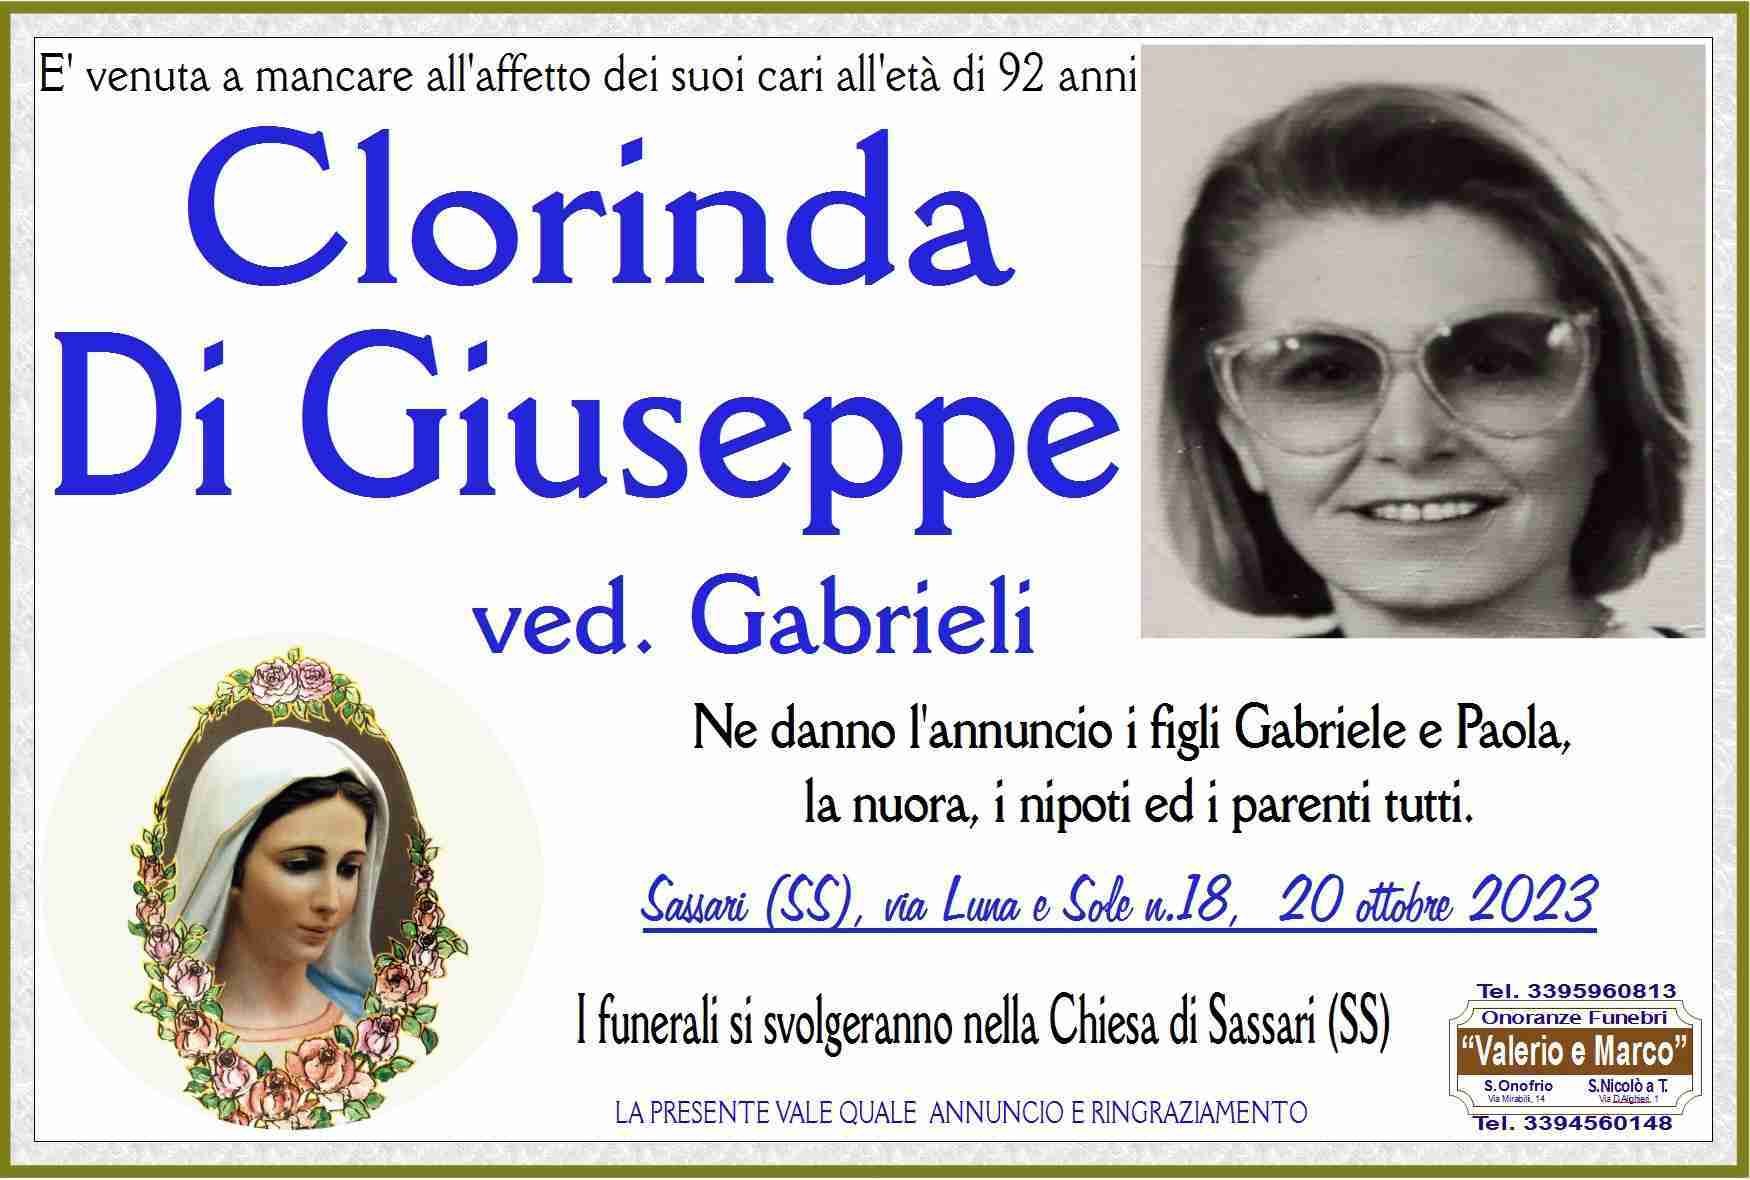 Clorinda Di Giuseppe